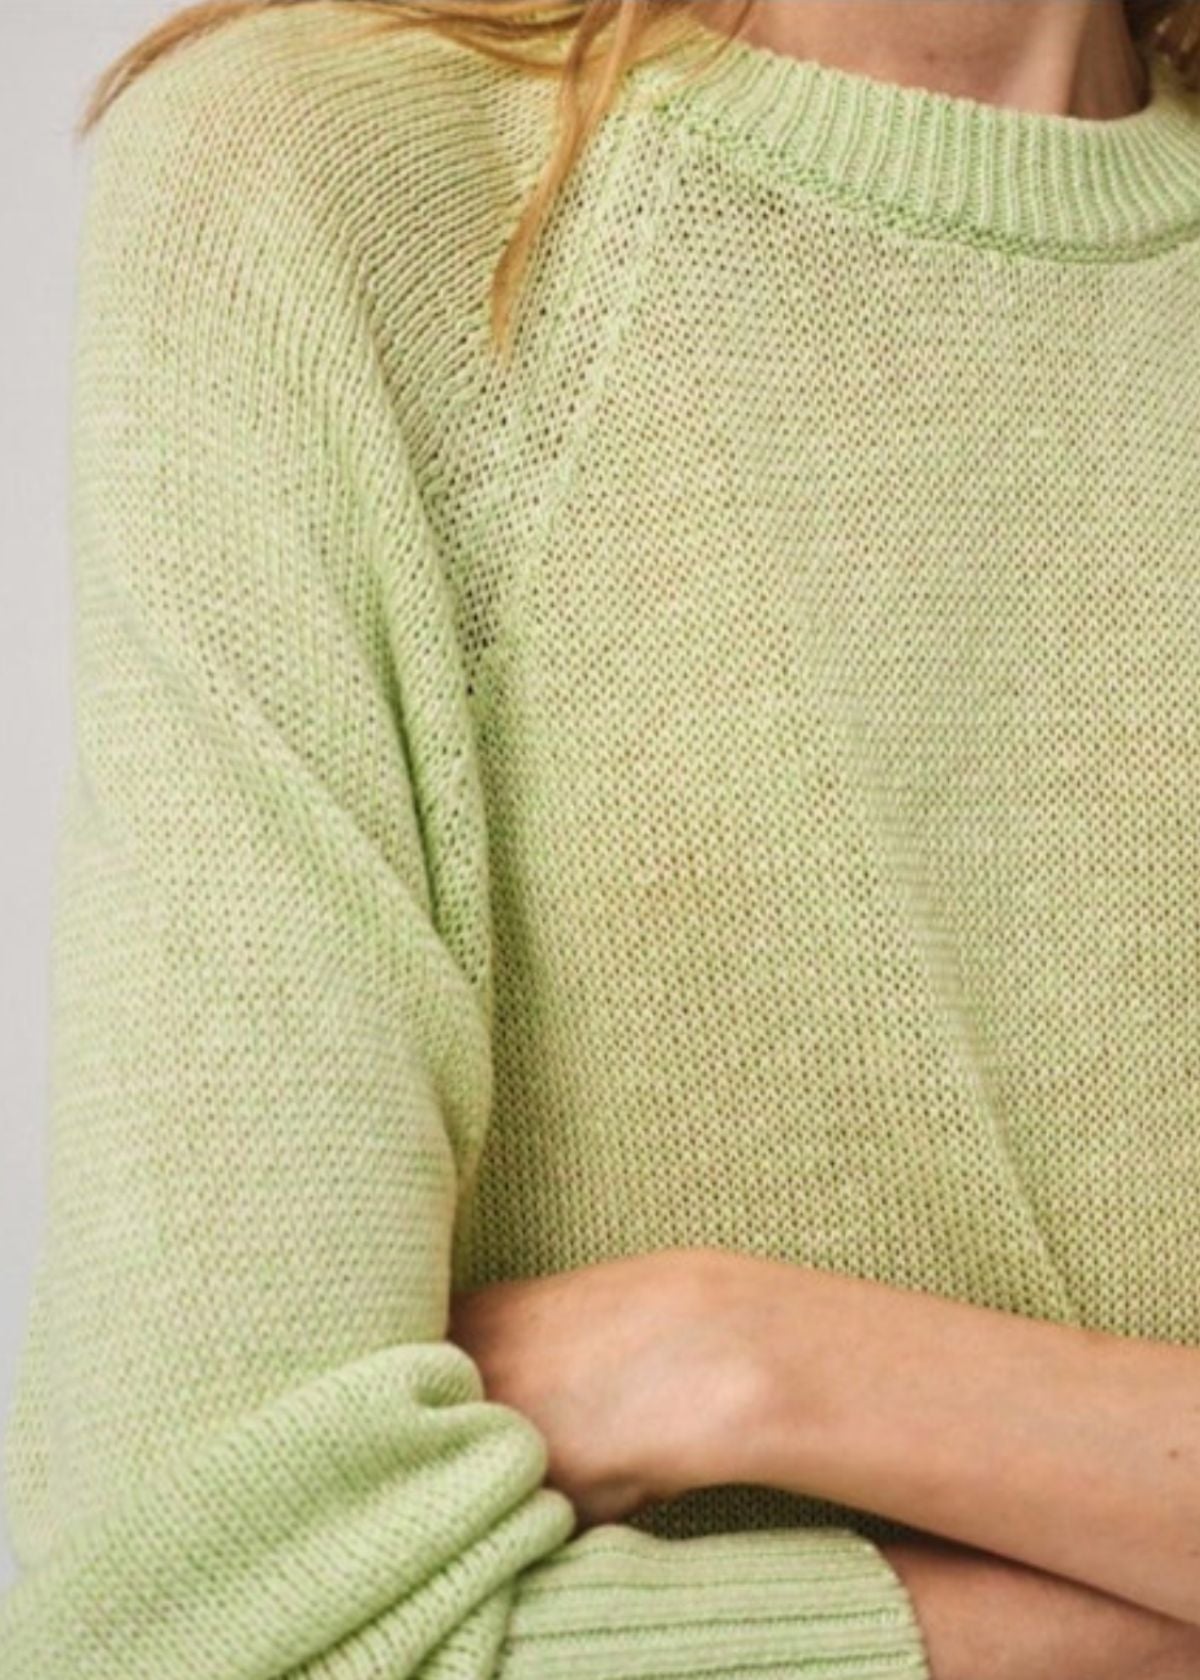 WHITE + WARREN Linen Marled Sweatshirt - Green Marl